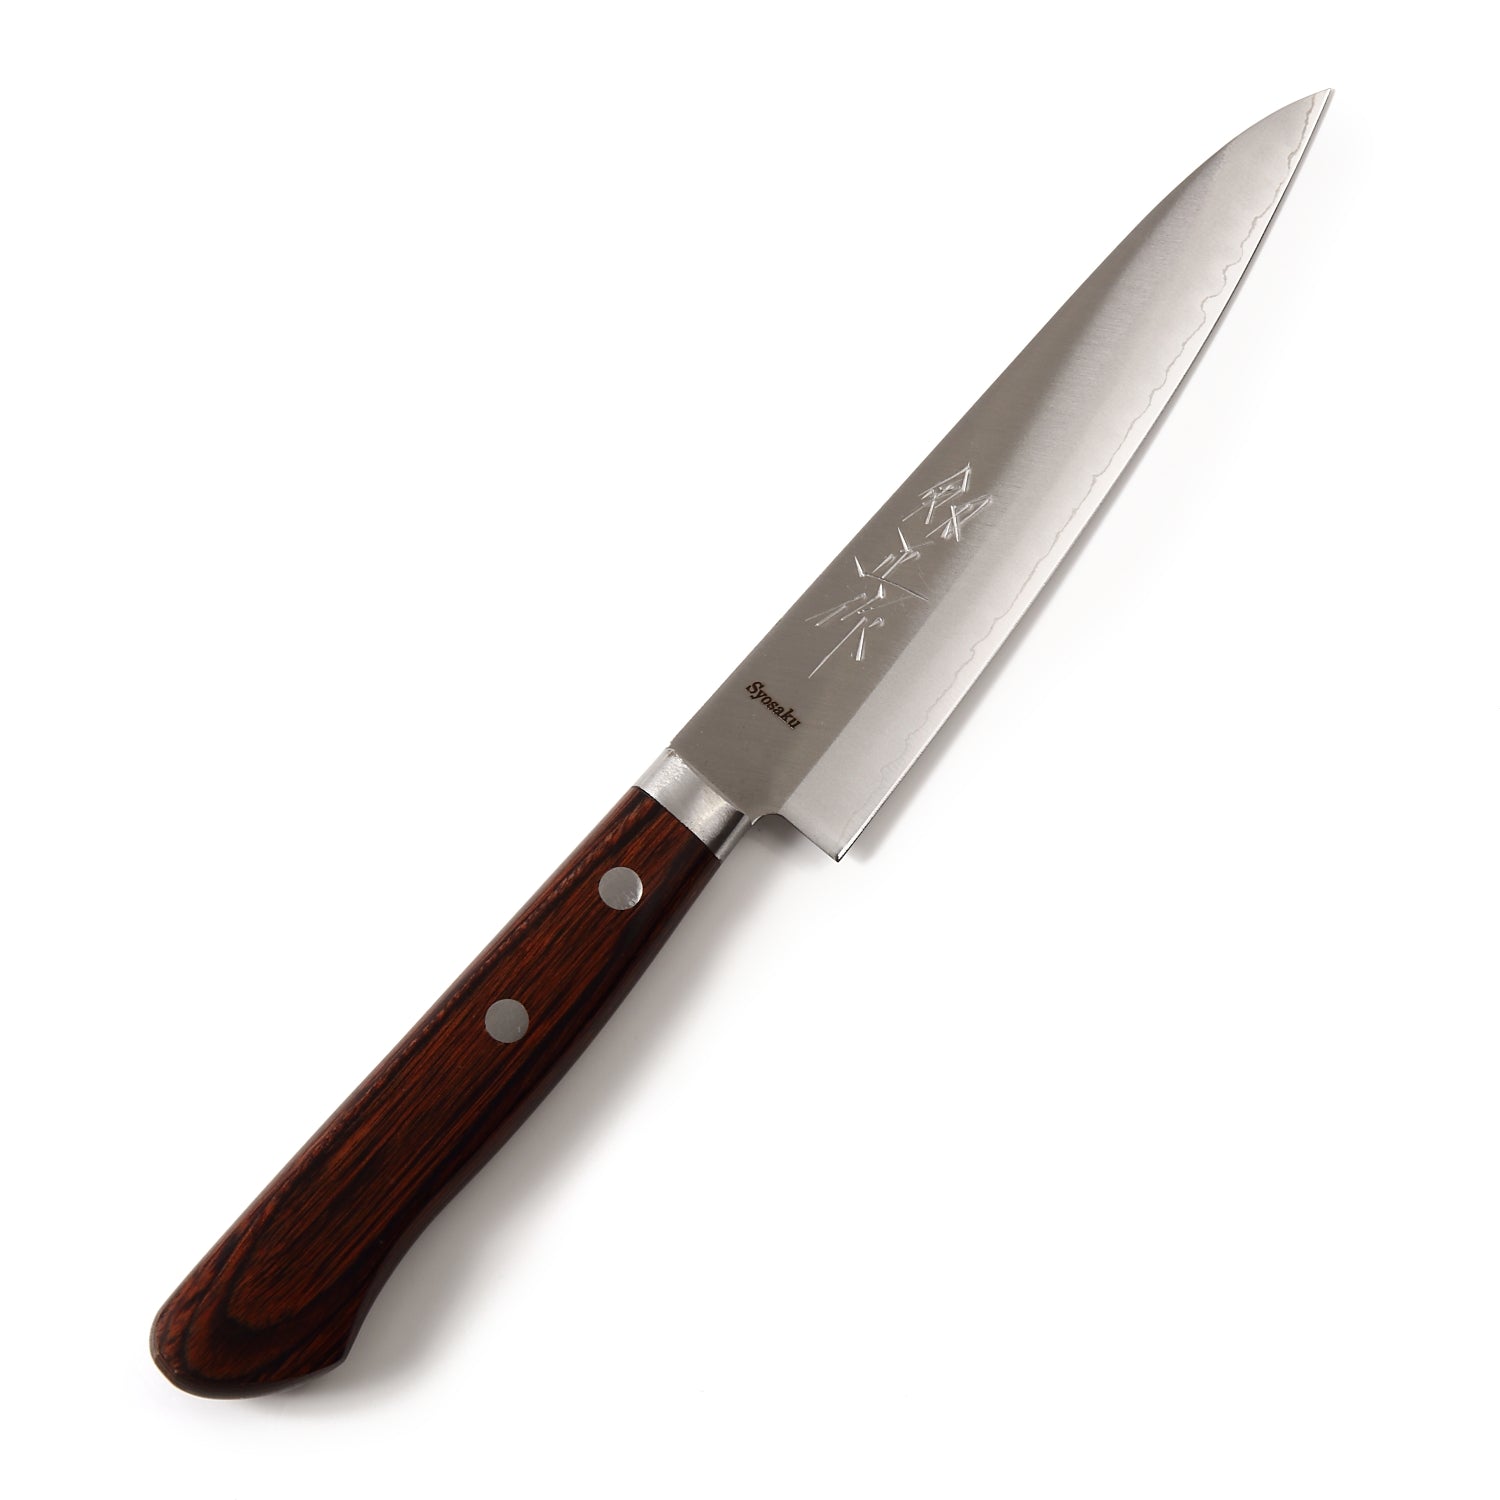 Syosaku Japanese Petty Best Sharp Kitchen Chef Knife VG-1 Gold Stainless Steel Mahogany Handle, 5.3-inch (135mm) - Syosaku-Japan